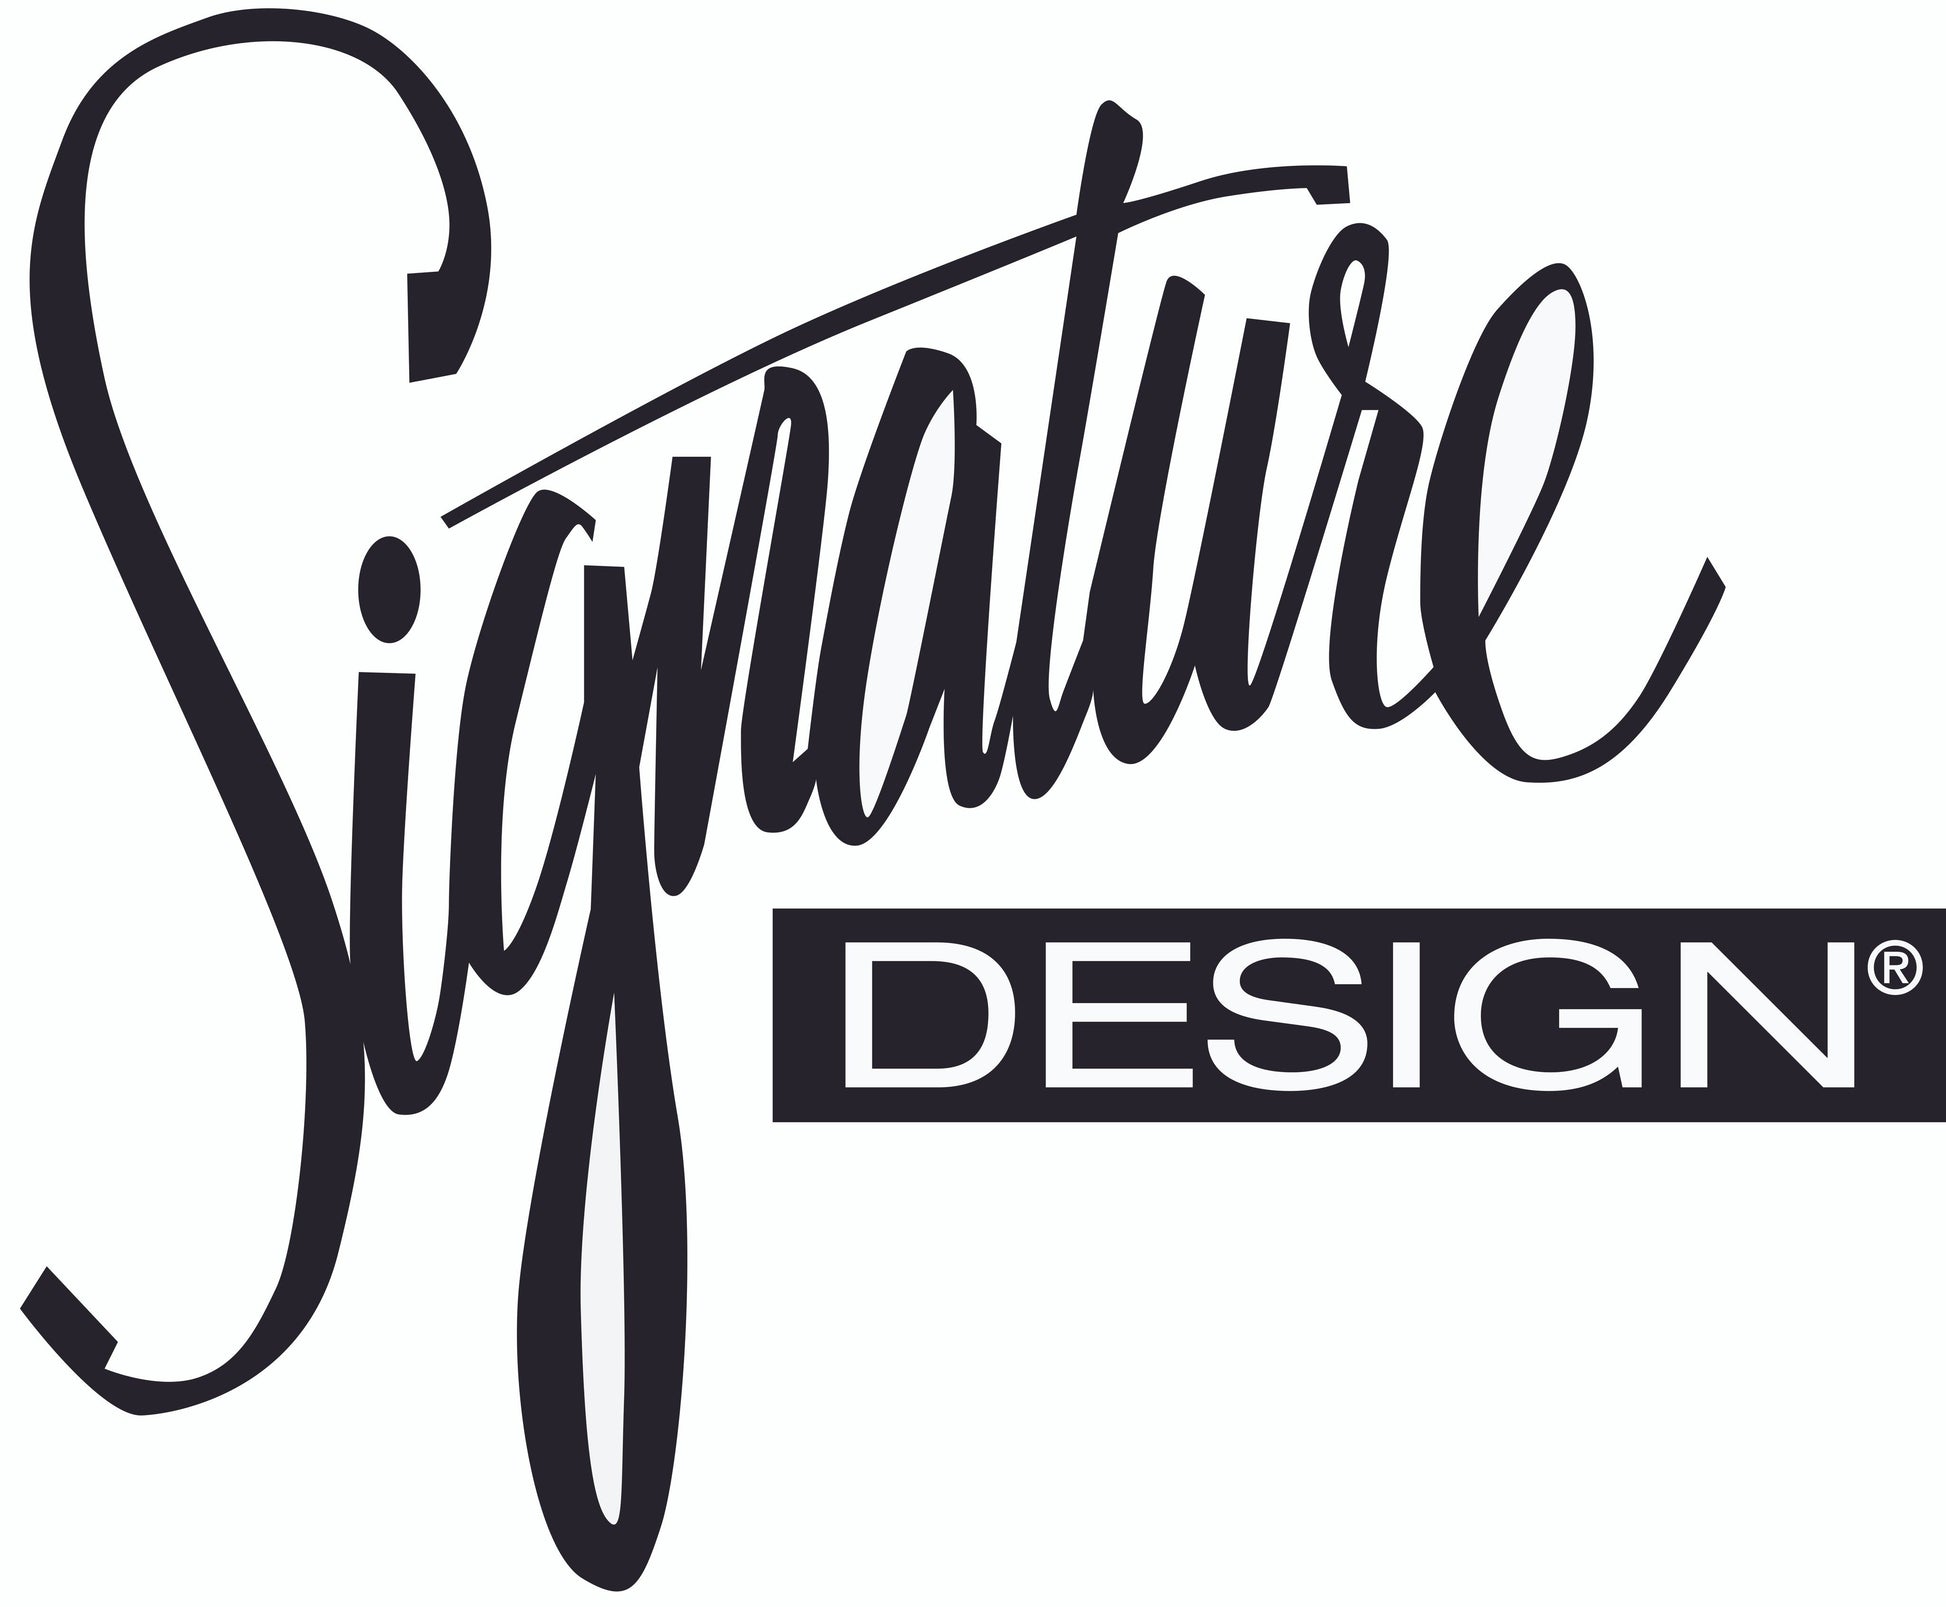 Lonoke Ottoman Signature Design by Ashley®